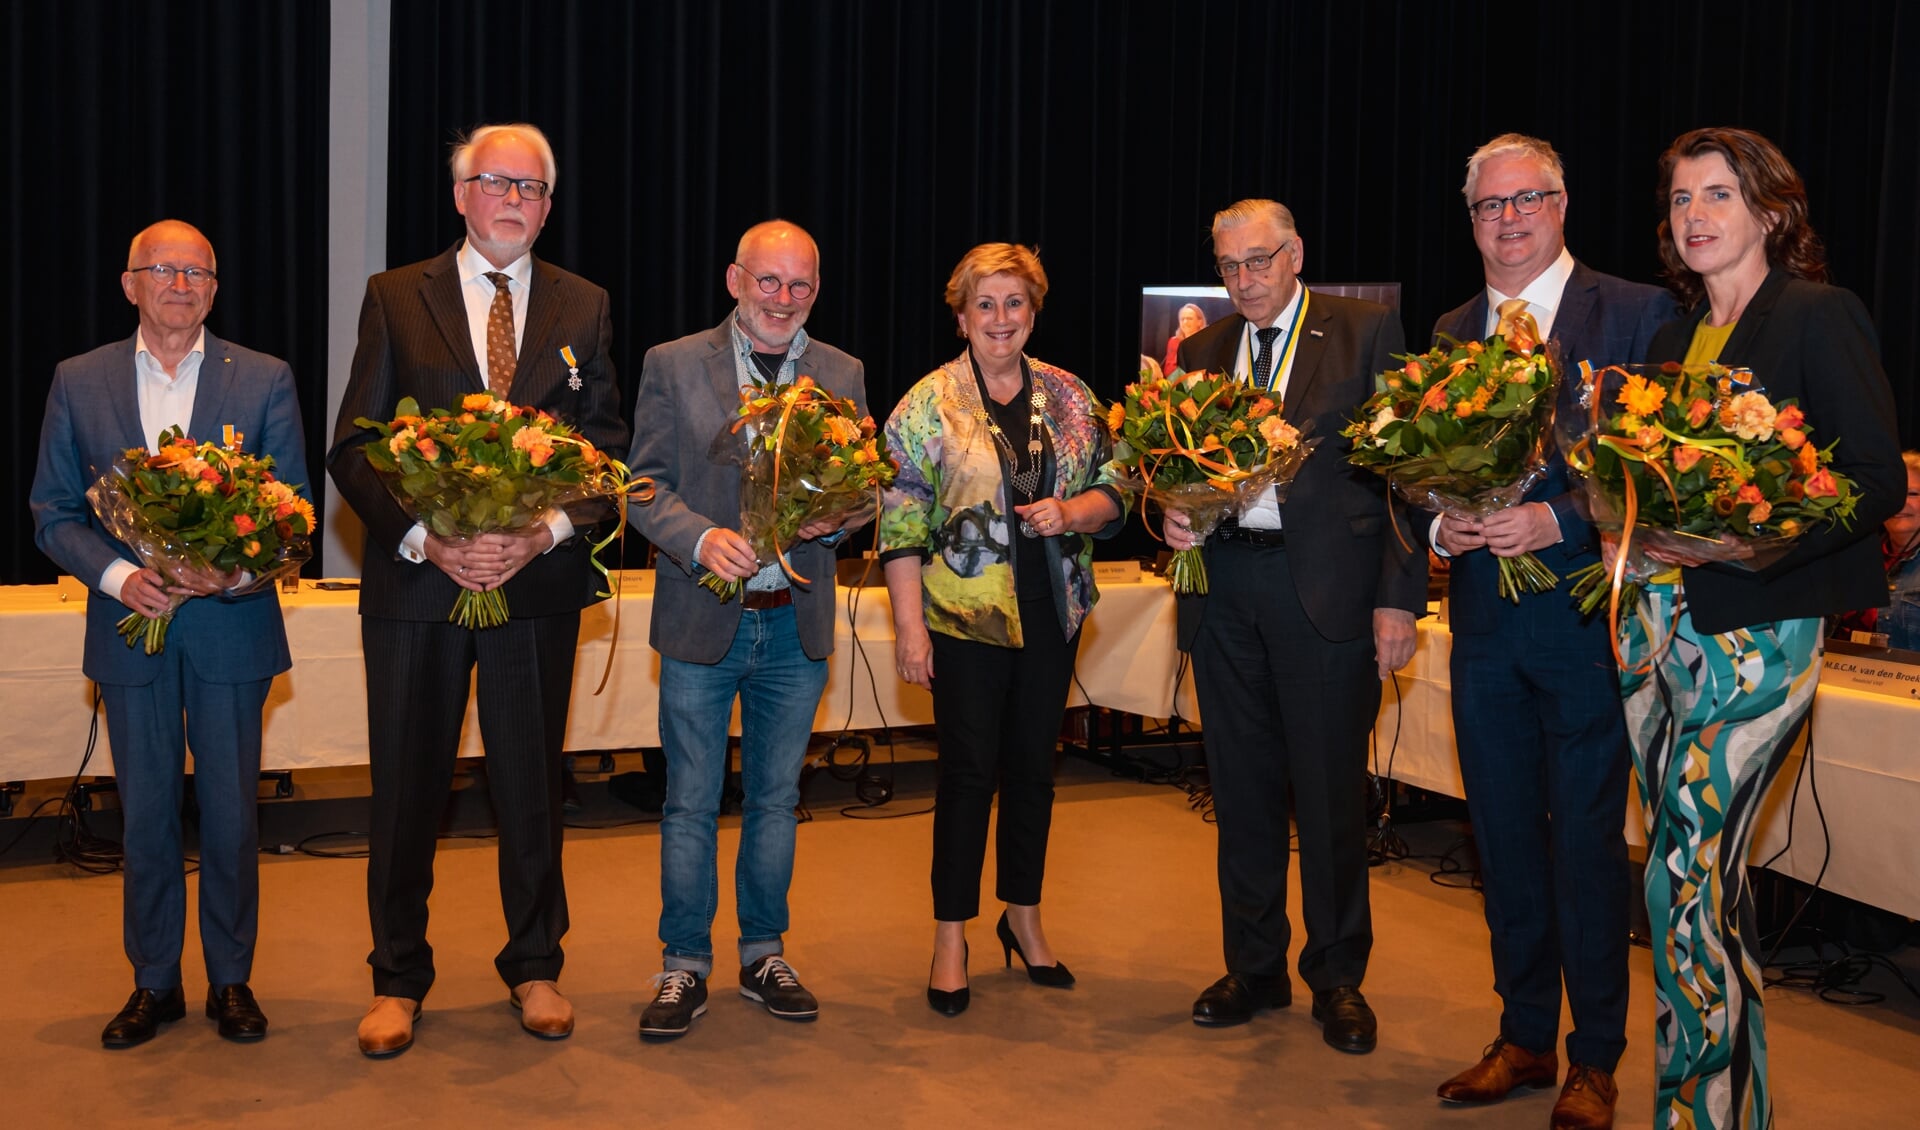 Op de foto van v.l.n.r.: Alex Kleijnen, Cor Louwerse, Ben Noorloos, Dorine Burmanje, Frans Snoek, Bart van der Knaap en Folkje
Spoelstra.